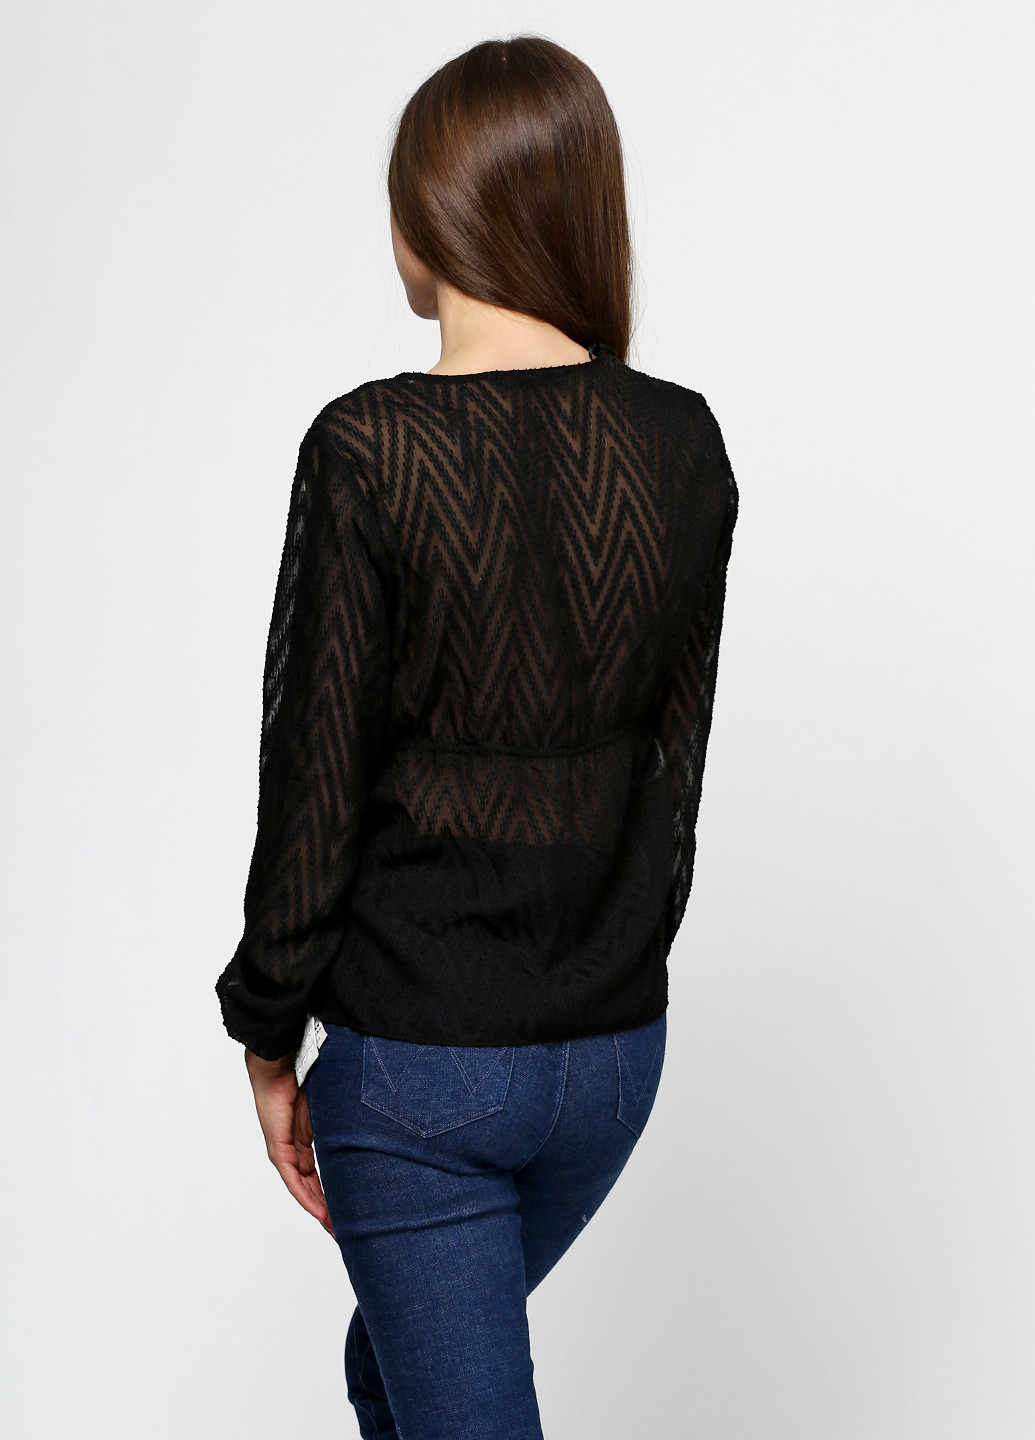 Черная демисезонная блуза Zara